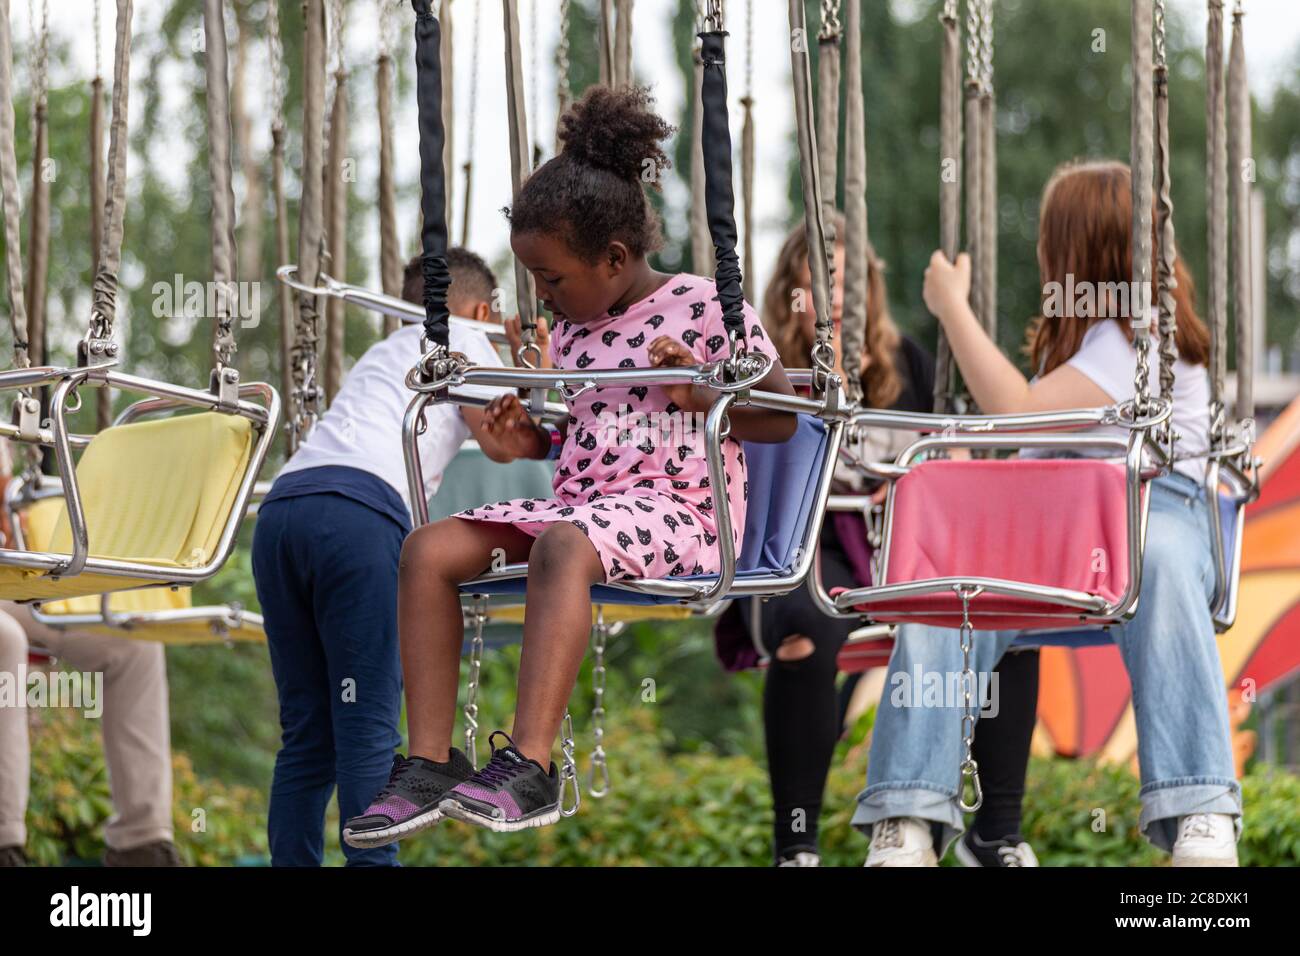 Jeune fille dans un carrousel de balançoire de chaise avant le trajet dans le parc d'attractions Linnanmäki, Helsinki, Finlande Banque D'Images